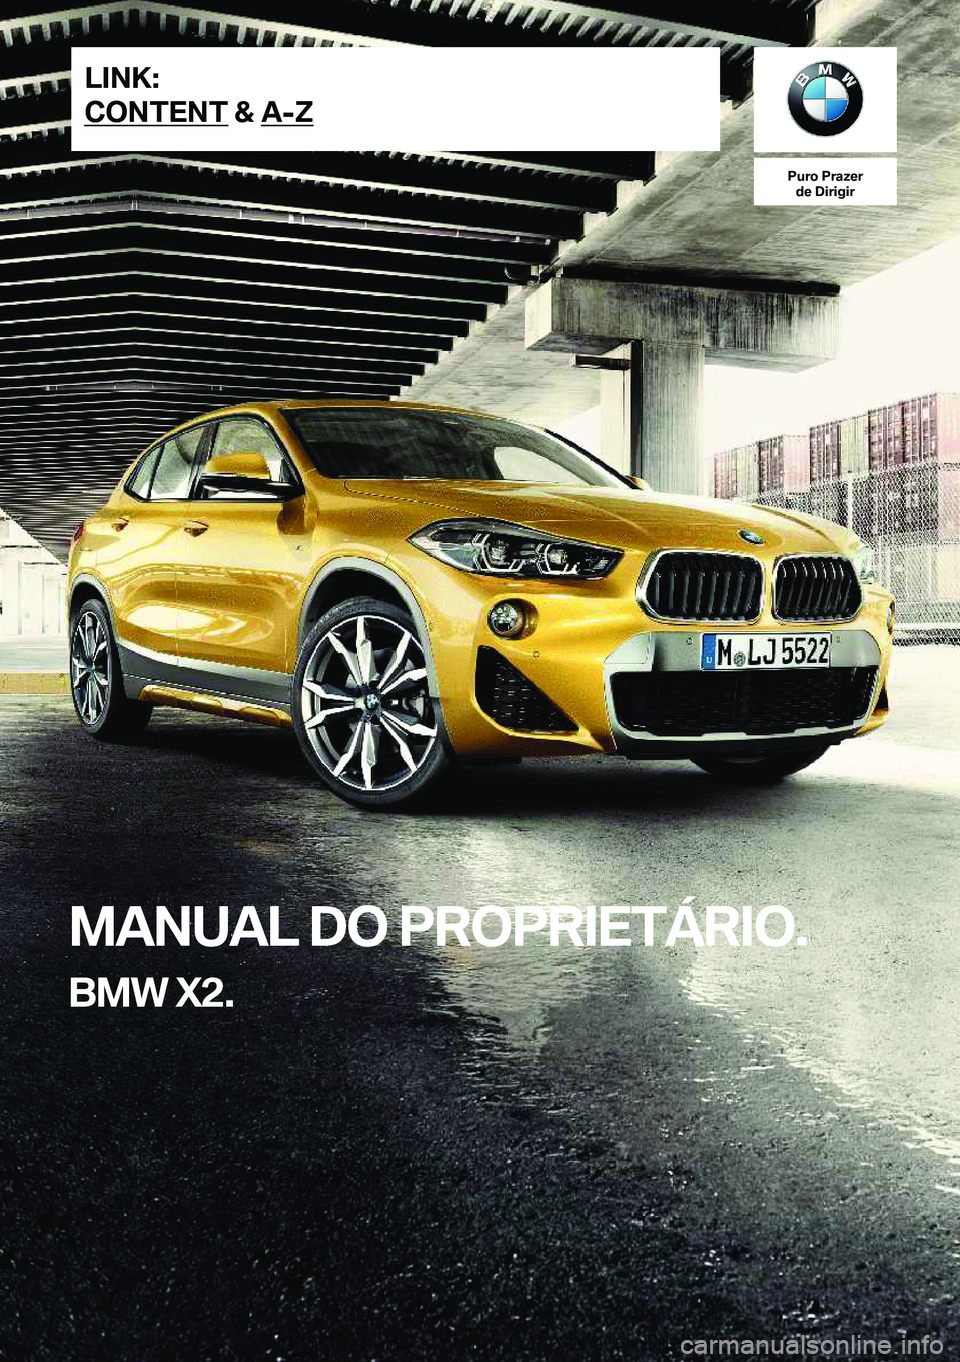 BMW X2 2019  Manual do condutor (in Portuguese) �P�u�r�o��P�r�a�z�e�r�d�e��D�i�r�i�g�i�r
�M�A�N�U�A�L��D�O��P�R�O�P�R�I�E�T�Á�R�I�O�.
�B�M�W��X�2�.�L�I�N�K�:
�C�O�N�T�E�N�T��&��A�-�Z�O�n�l�i�n�e��E�d�i�t�i�o�n��f�o�r��P�a�r�t��n�o�.��0